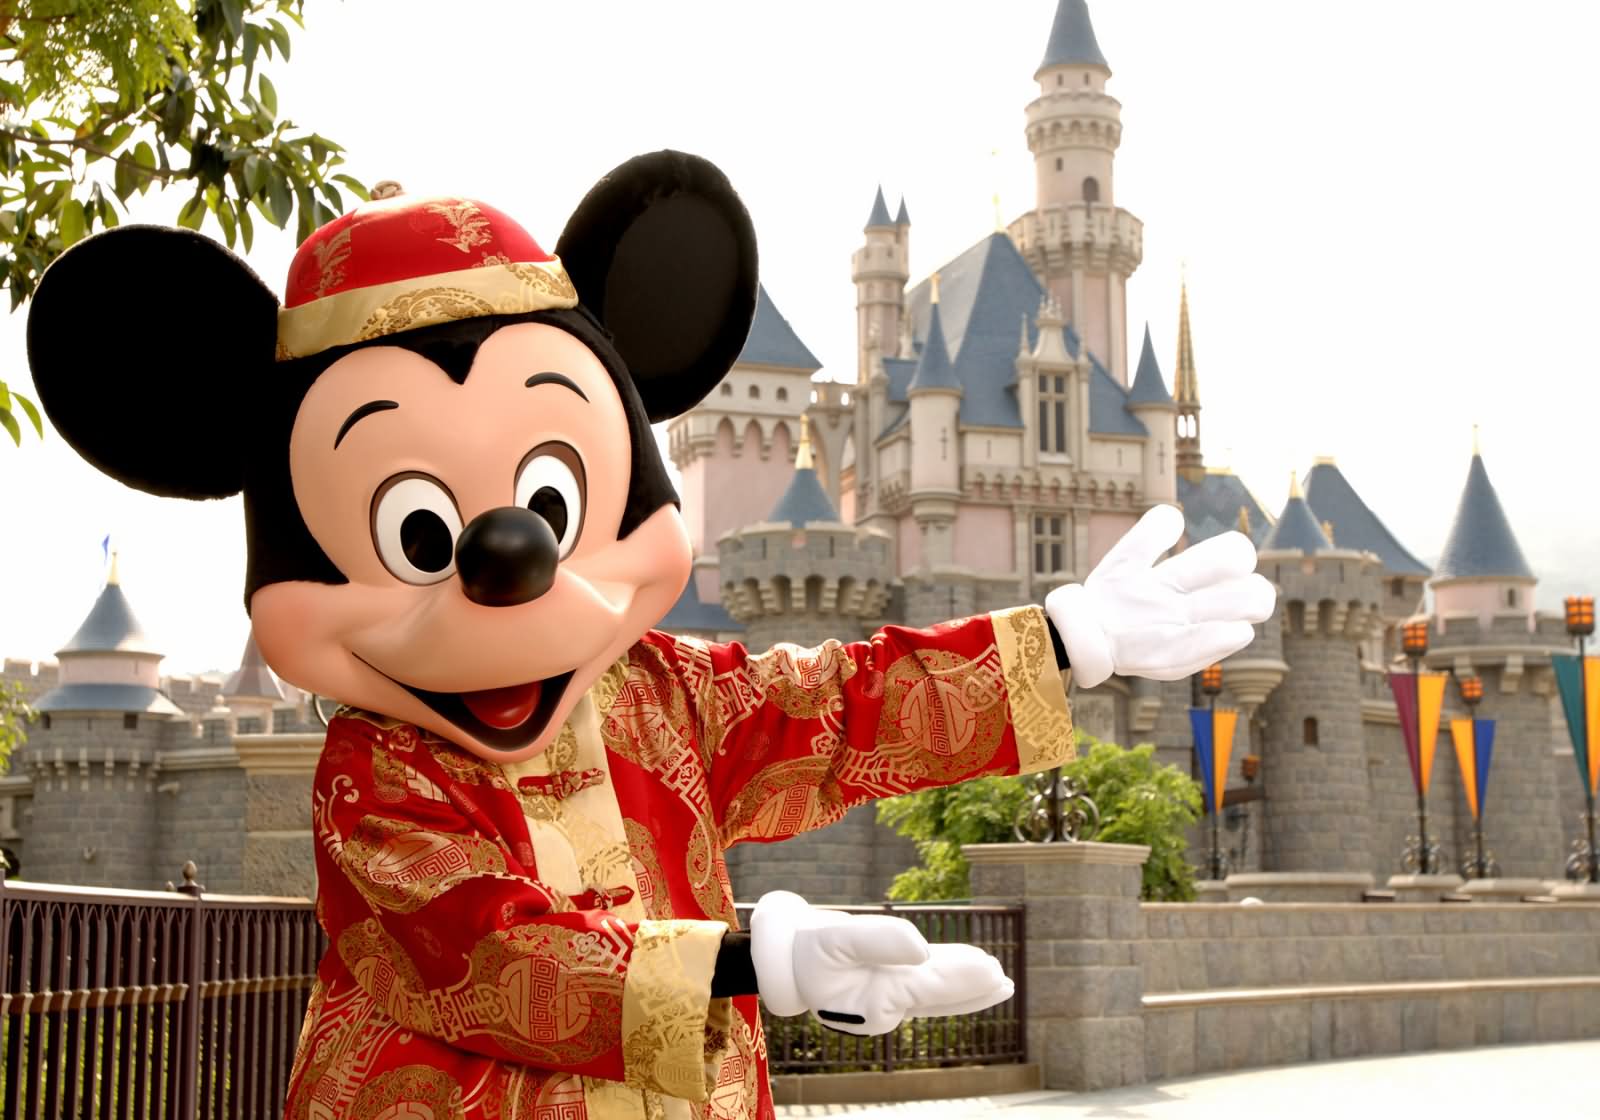 Mickey Mouse At The Disneyland Hong Kong